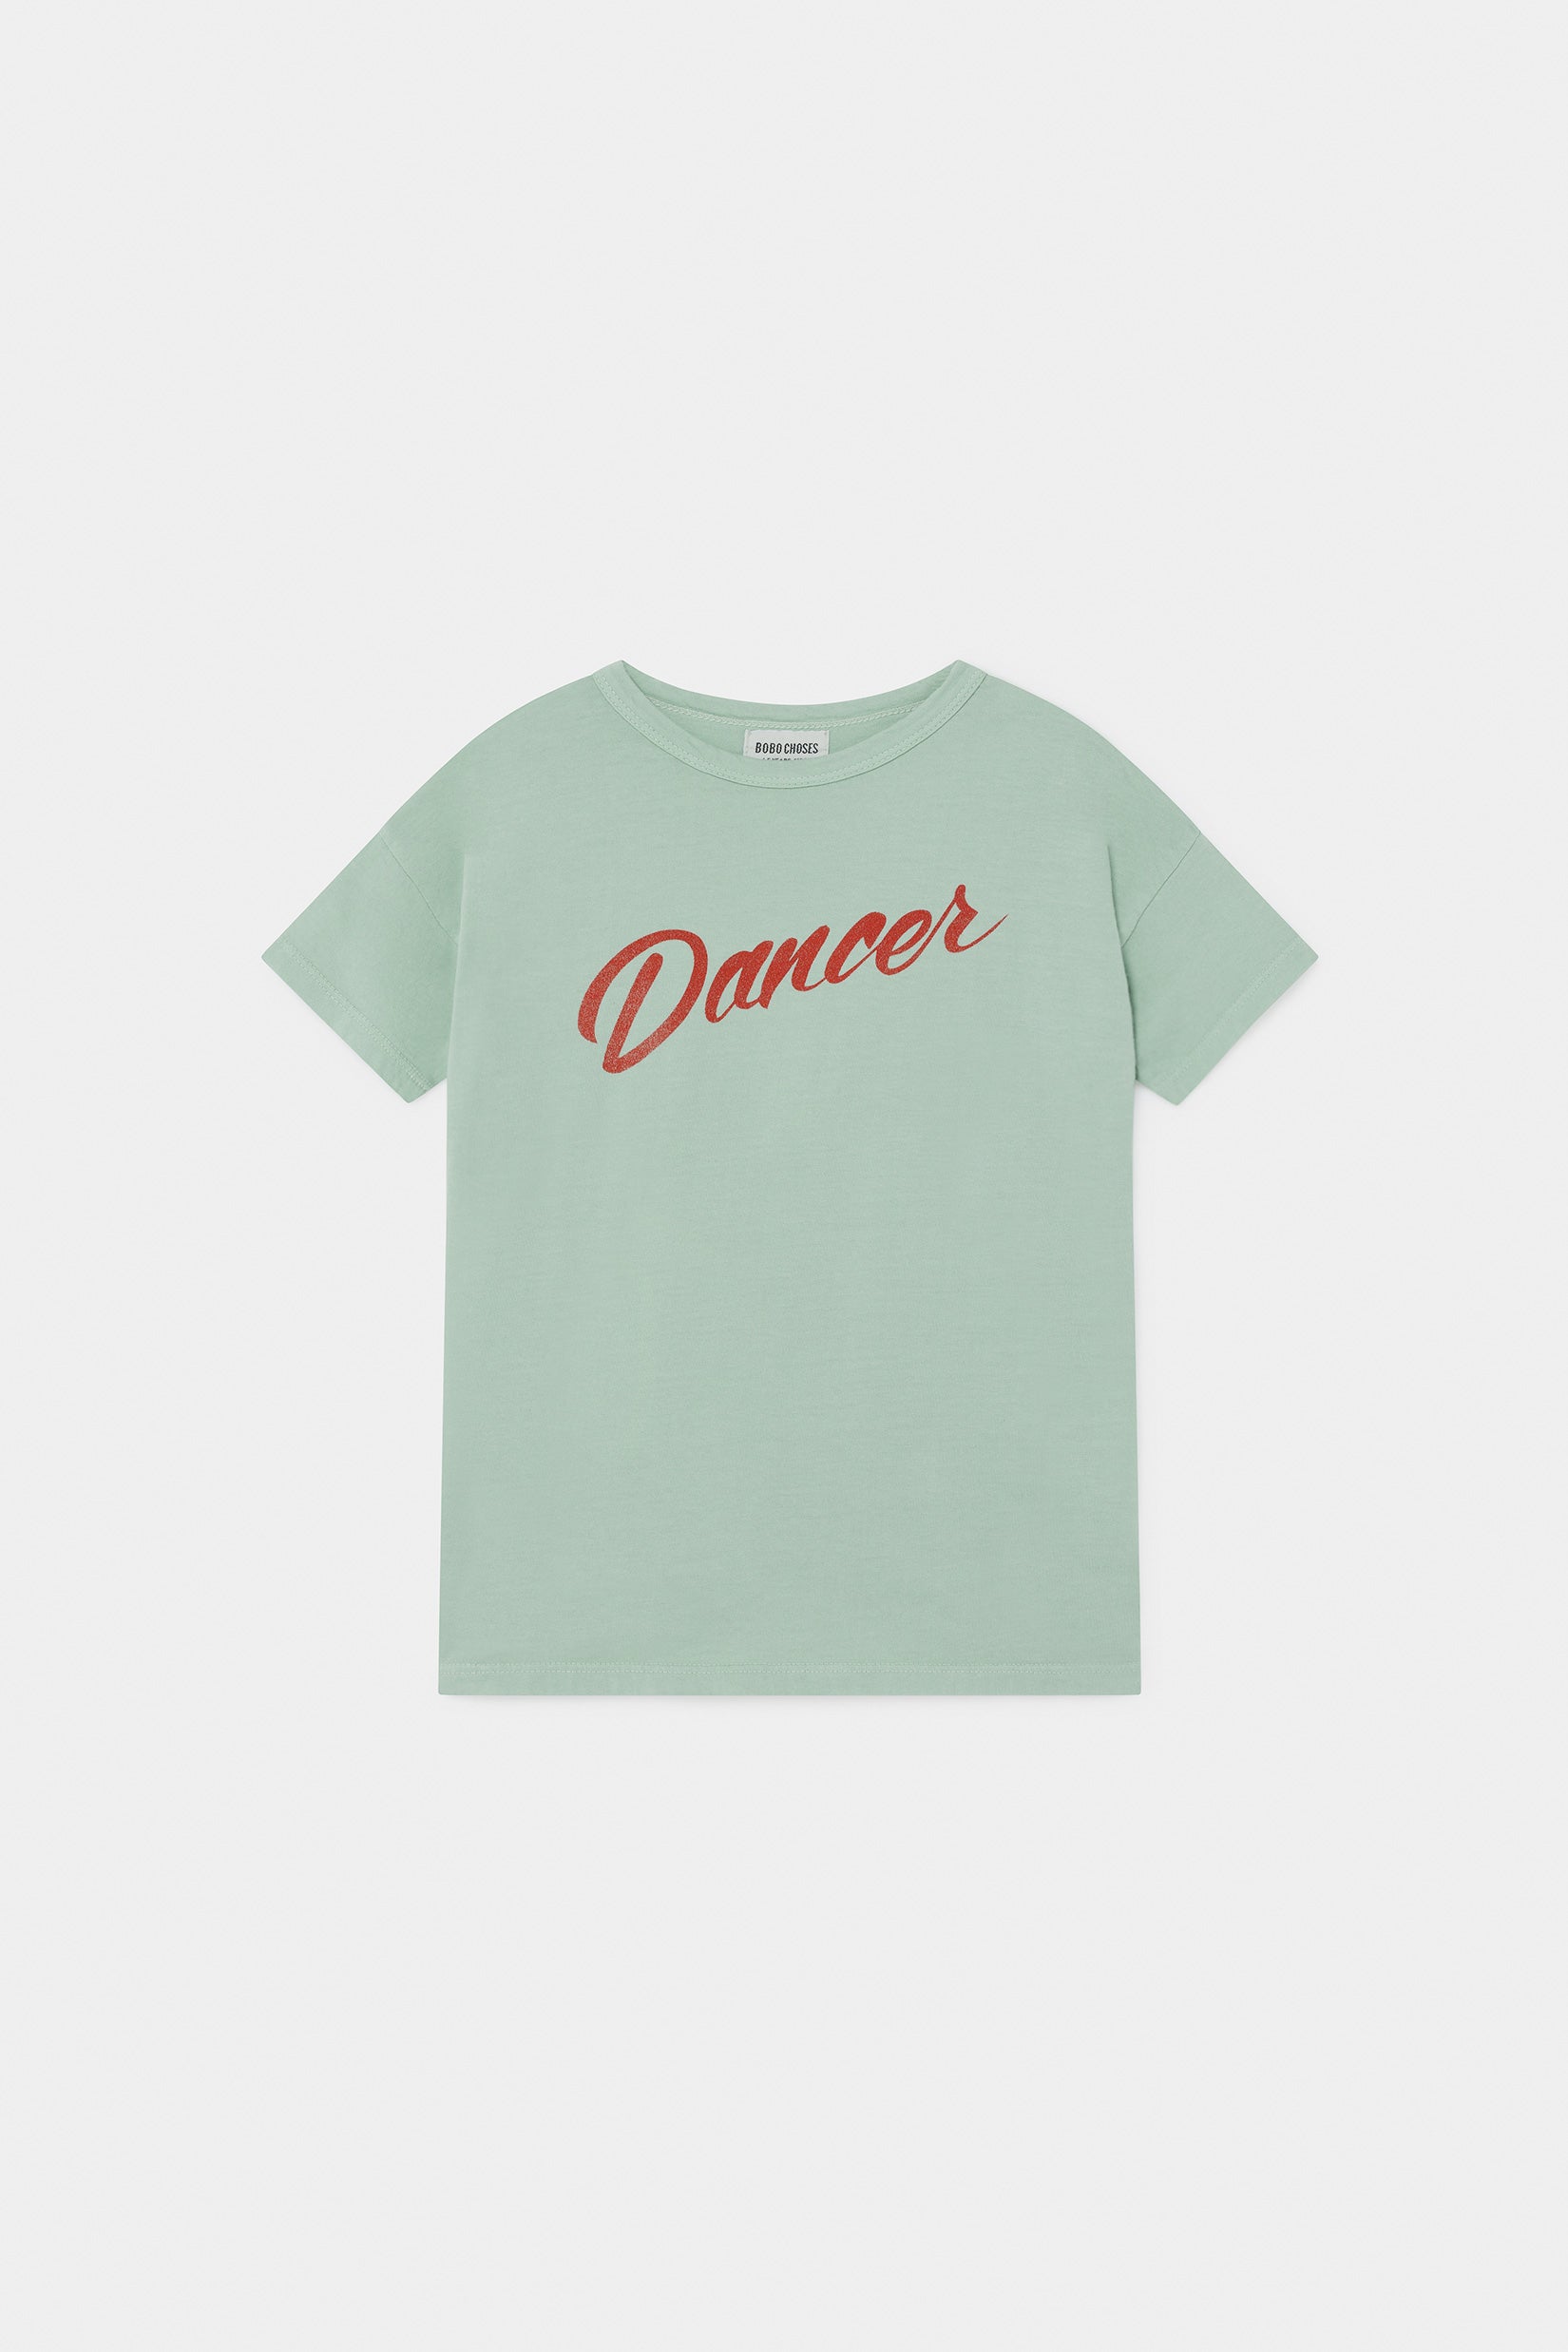 Boys Green Dancer Cotton T-shirt